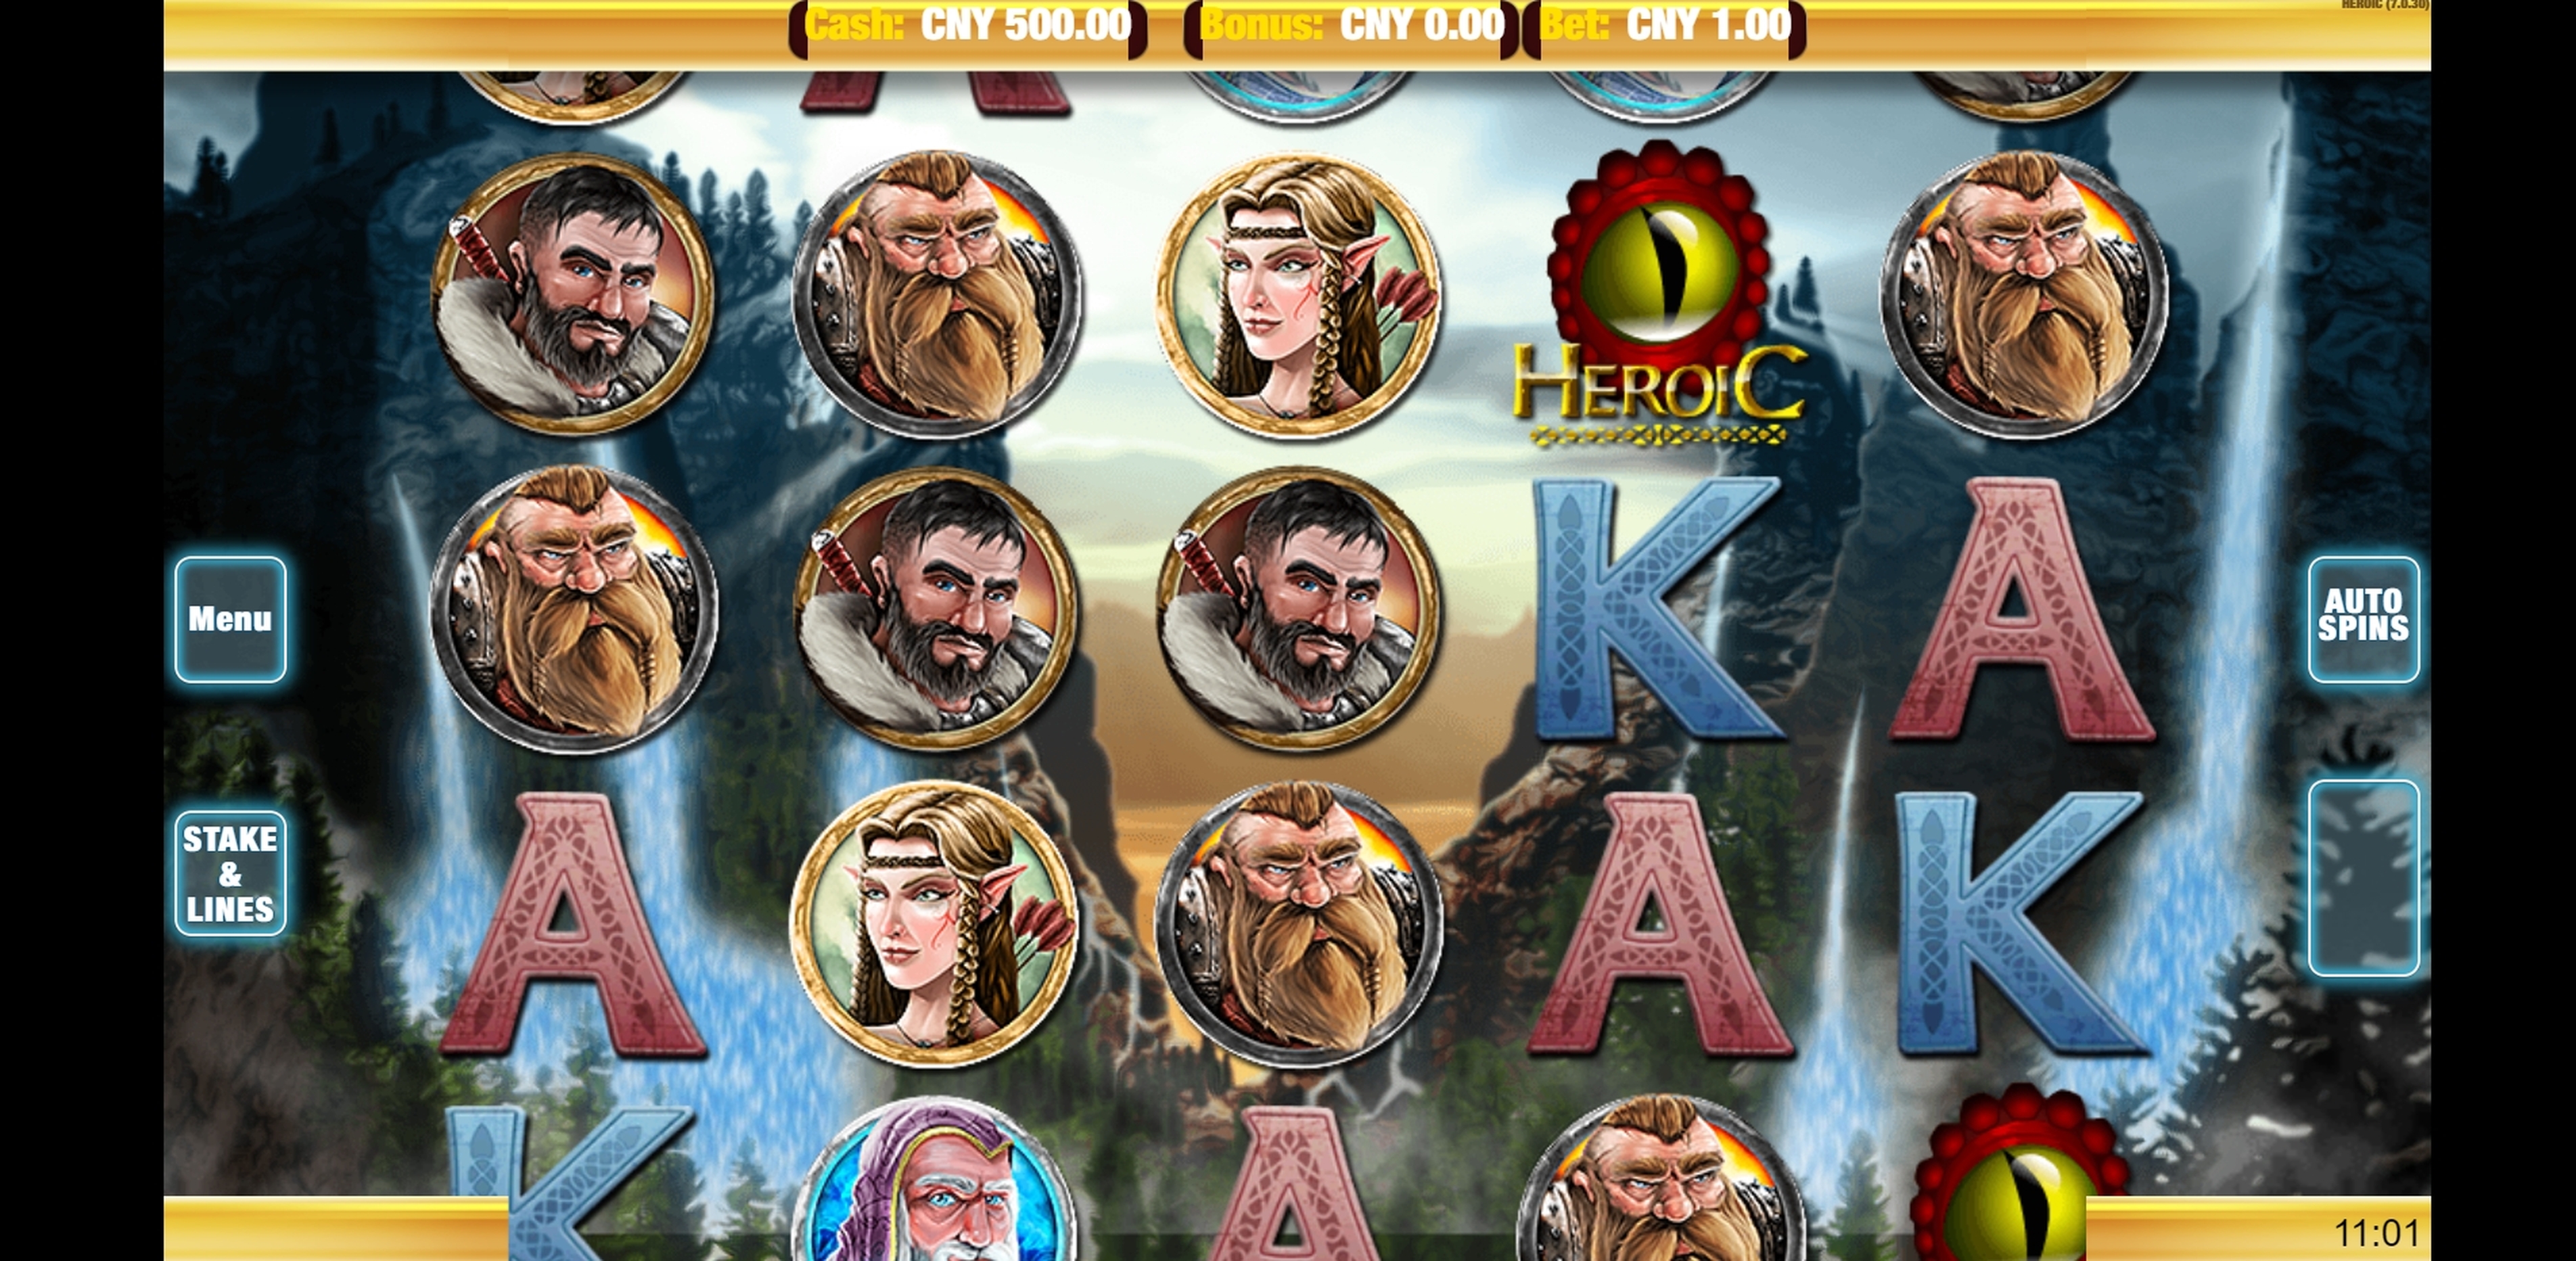 Reels in Heroic Slot Game by Nektan